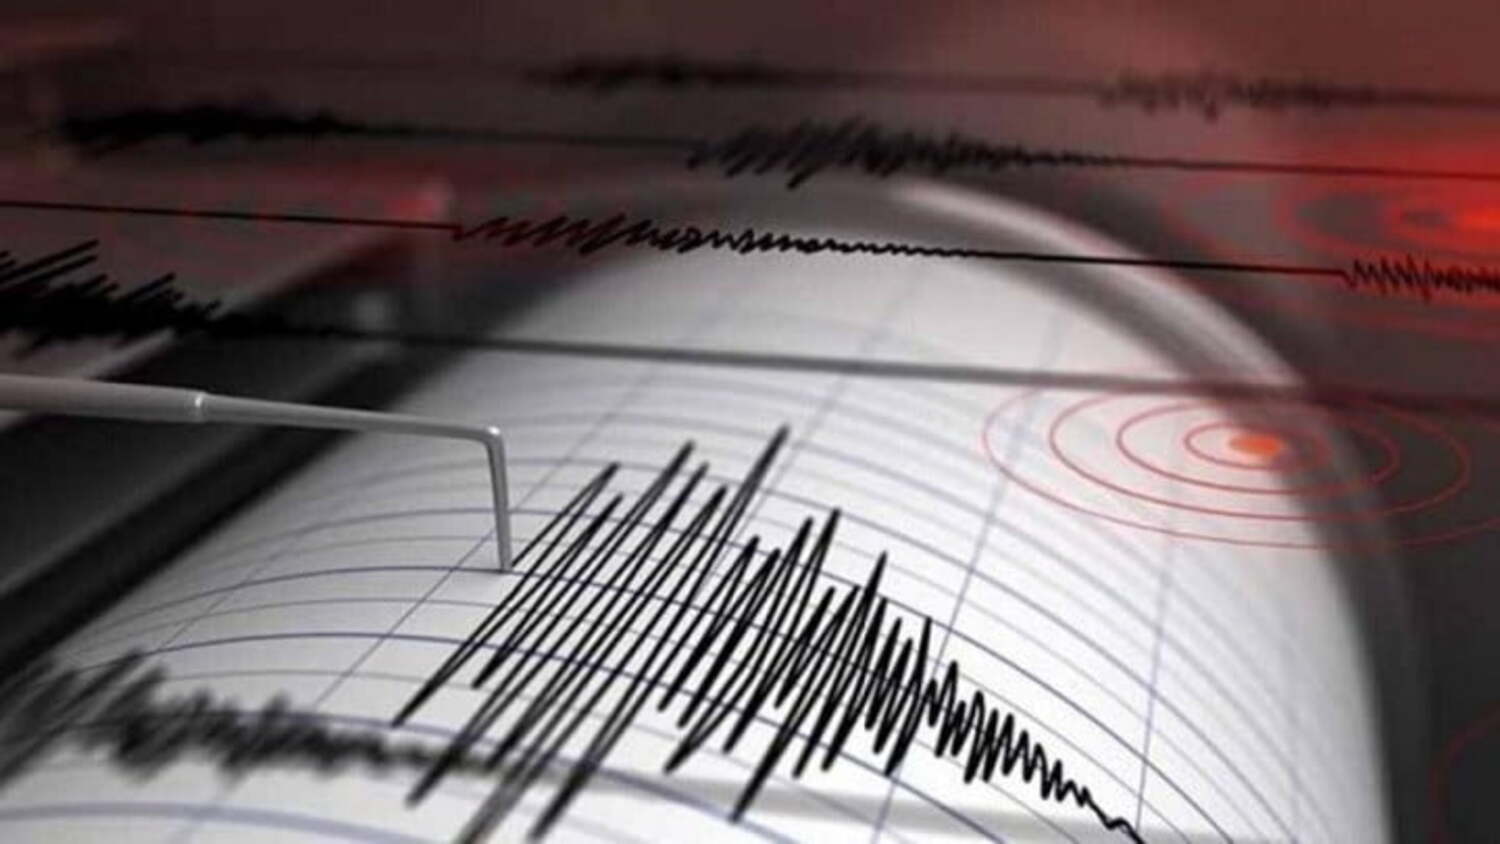 Σεισμός στη Σύμη: Οι πρώτες πληροφορίες για επίκεντρο και εστιακό βάθος